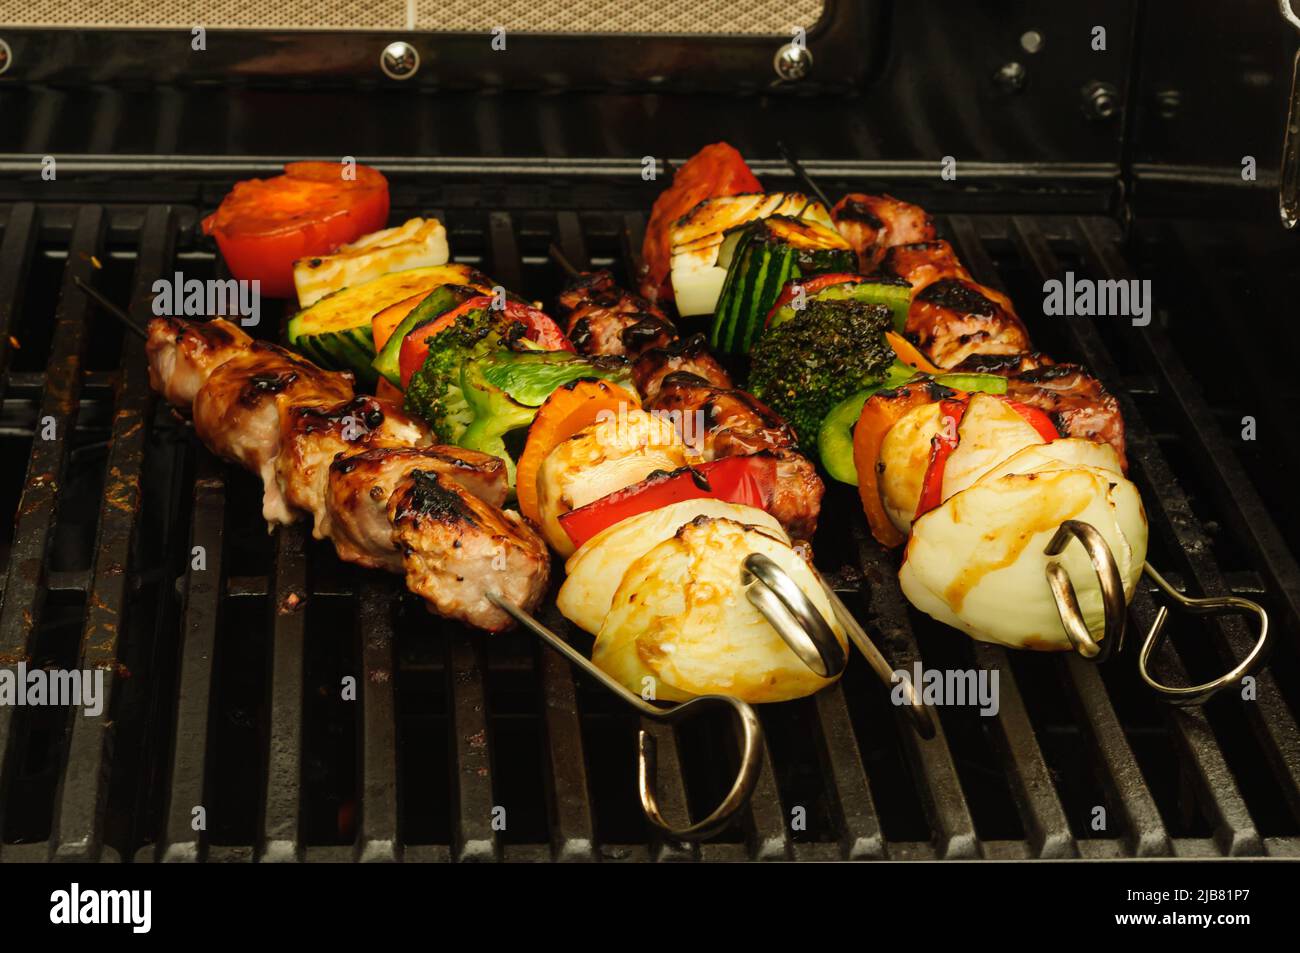 Brochette de légumes grillés et de viande sur un barbecue - DOF peu profond Banque D'Images